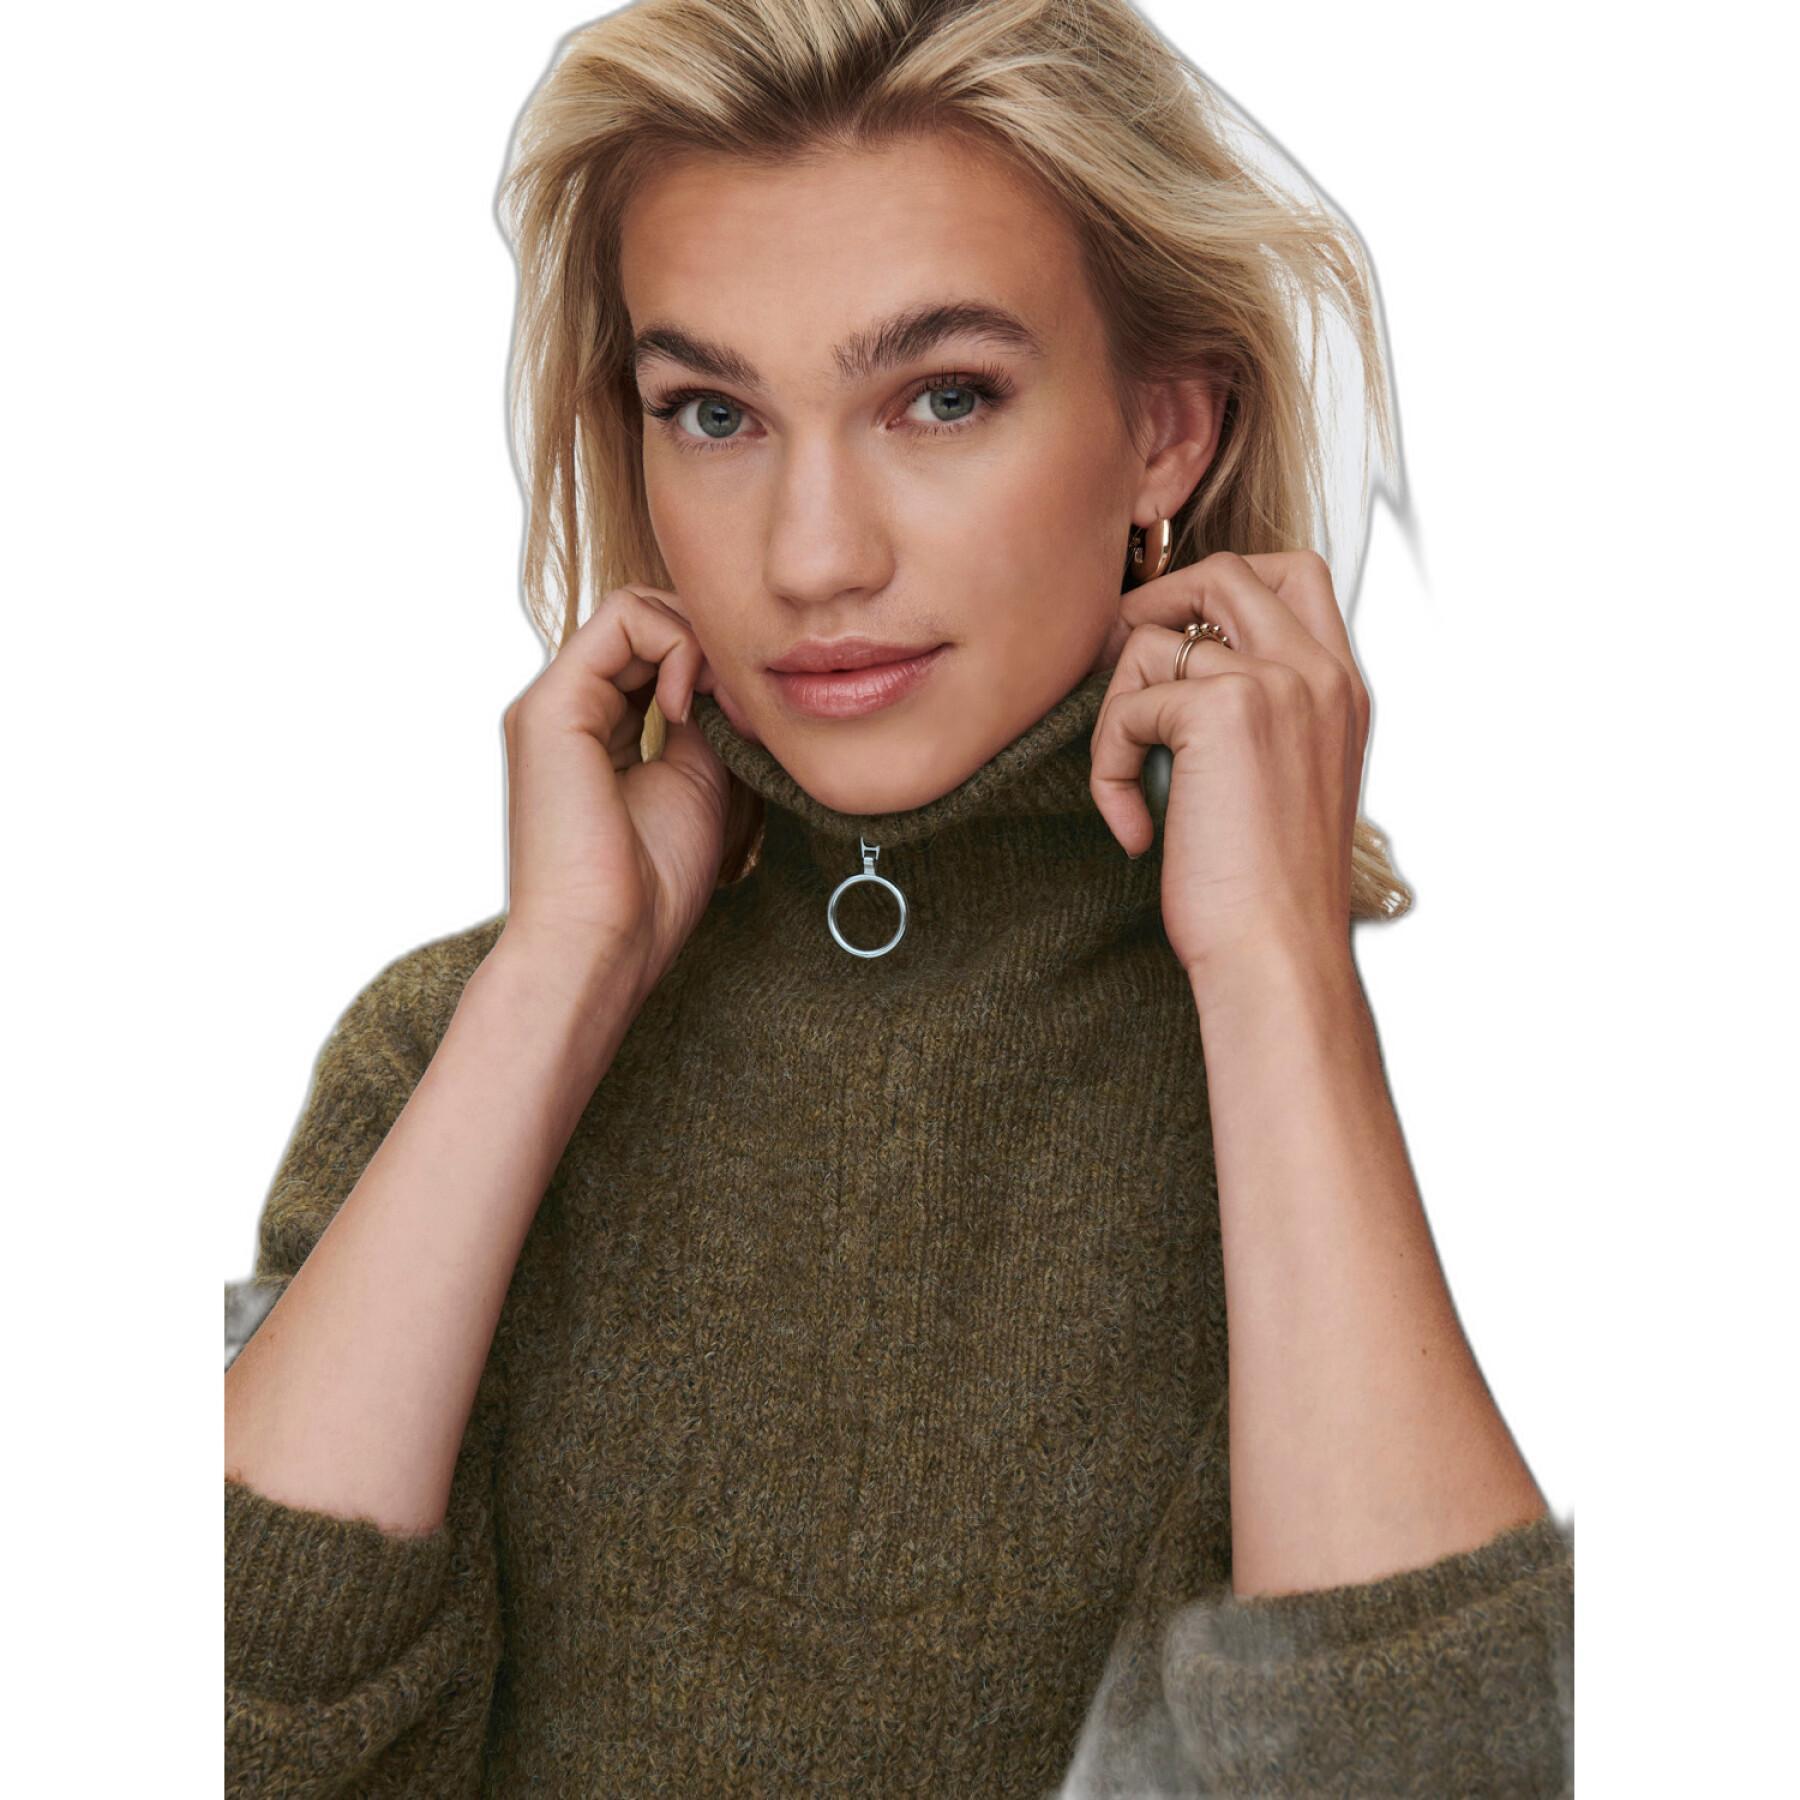 Women's zip-up sweater Only Onlbaker